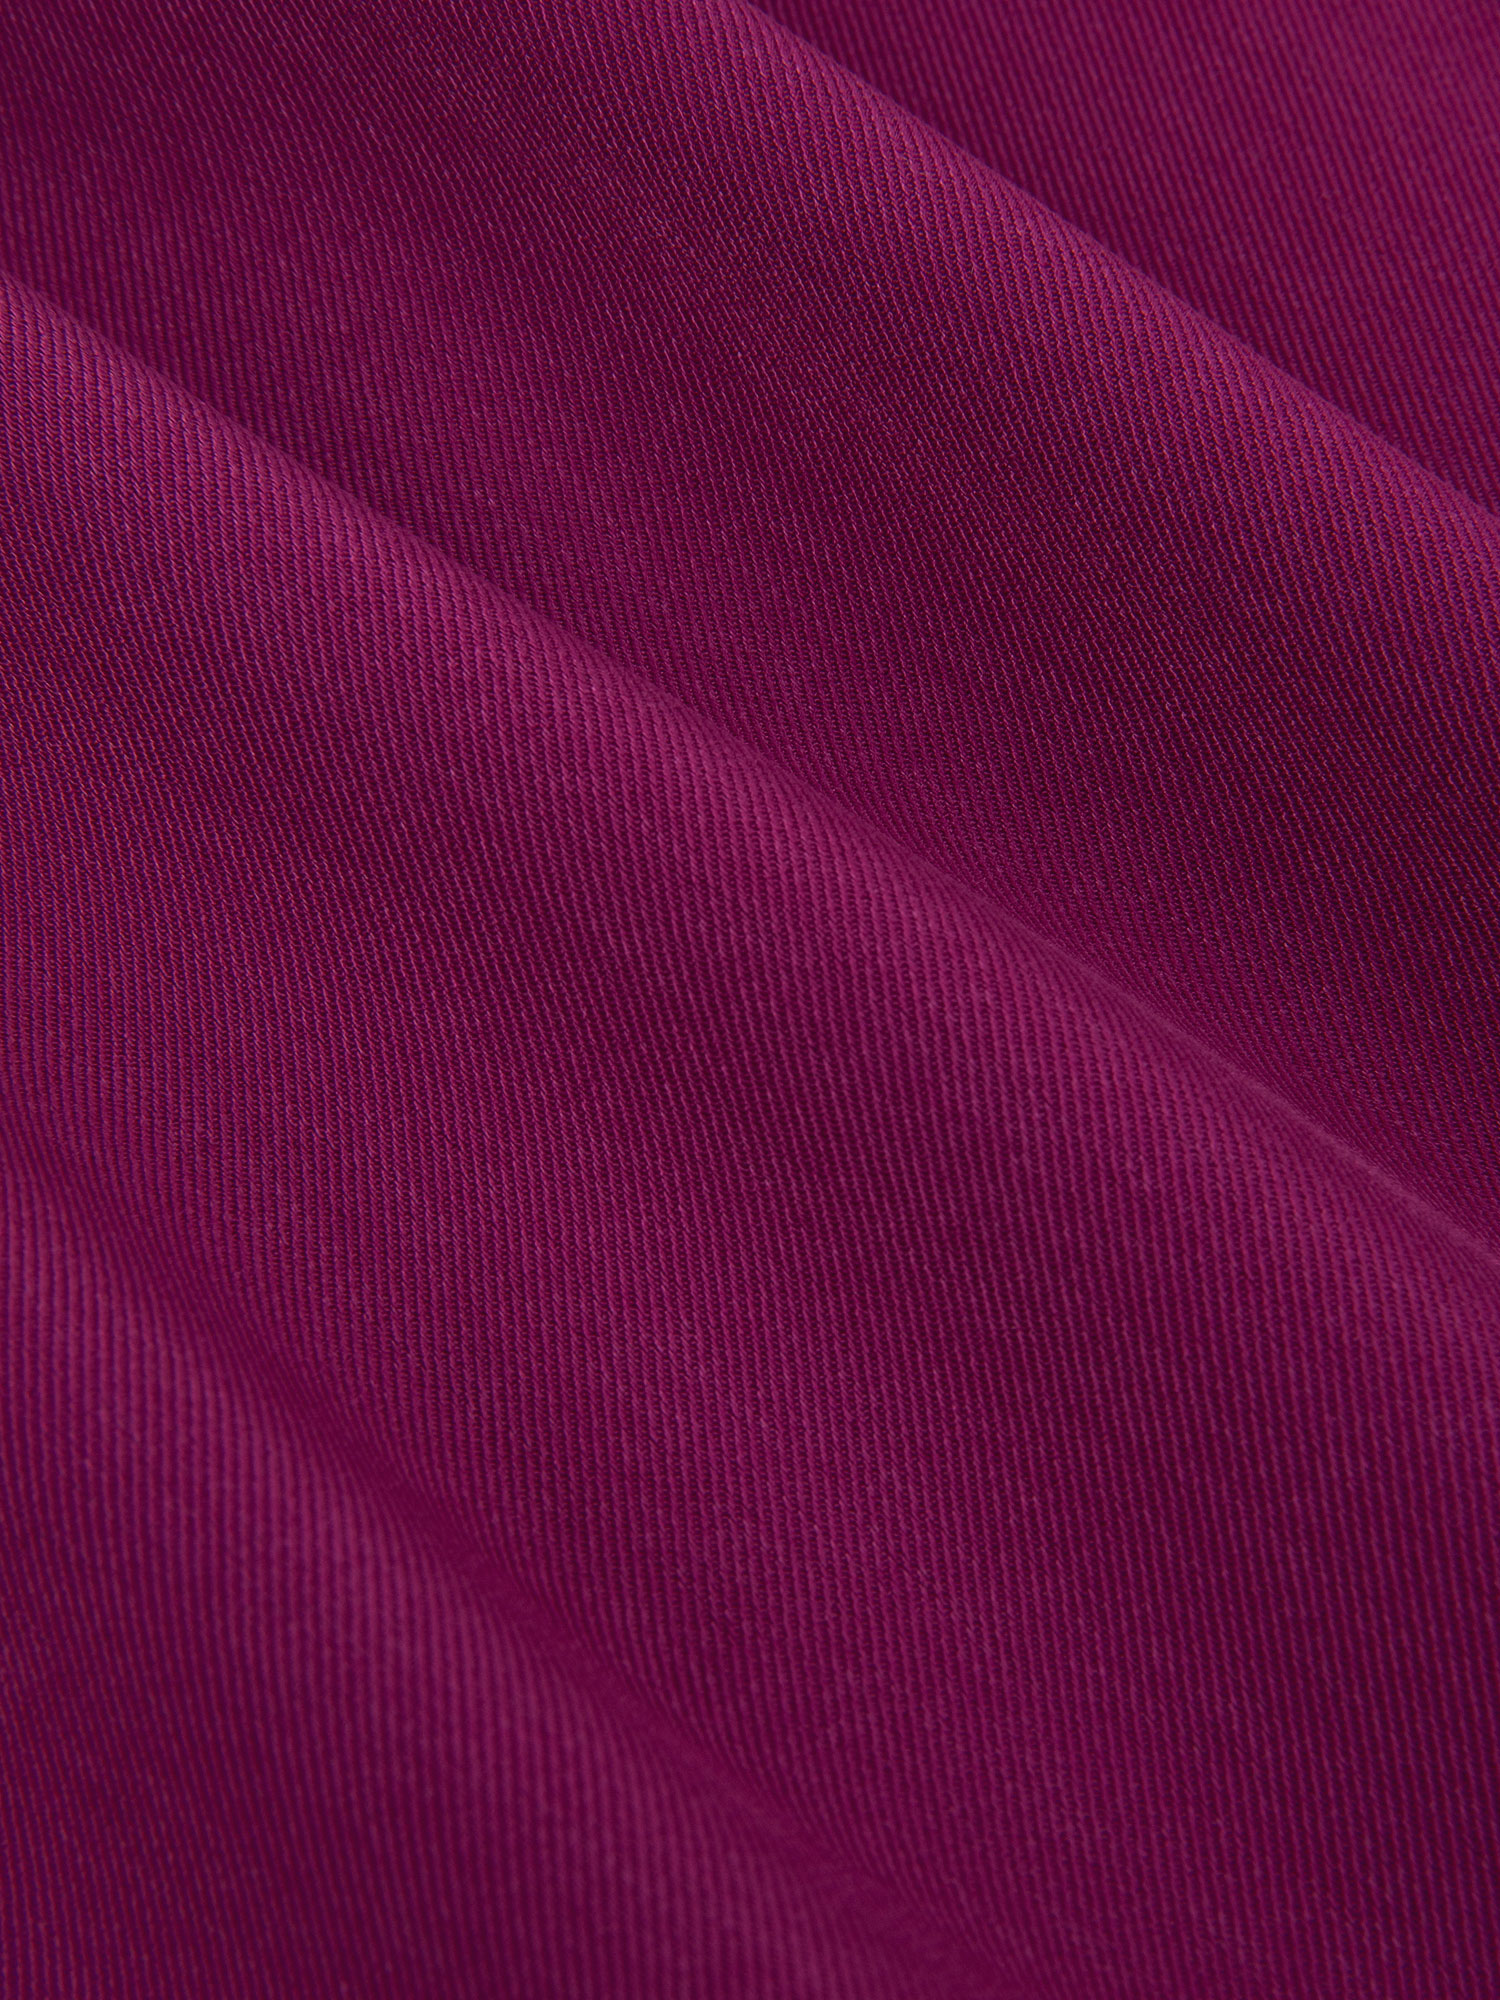 detail van de kleur en stof van Ydence Pants Solange Purple. Mooie diep paars/roze kleur